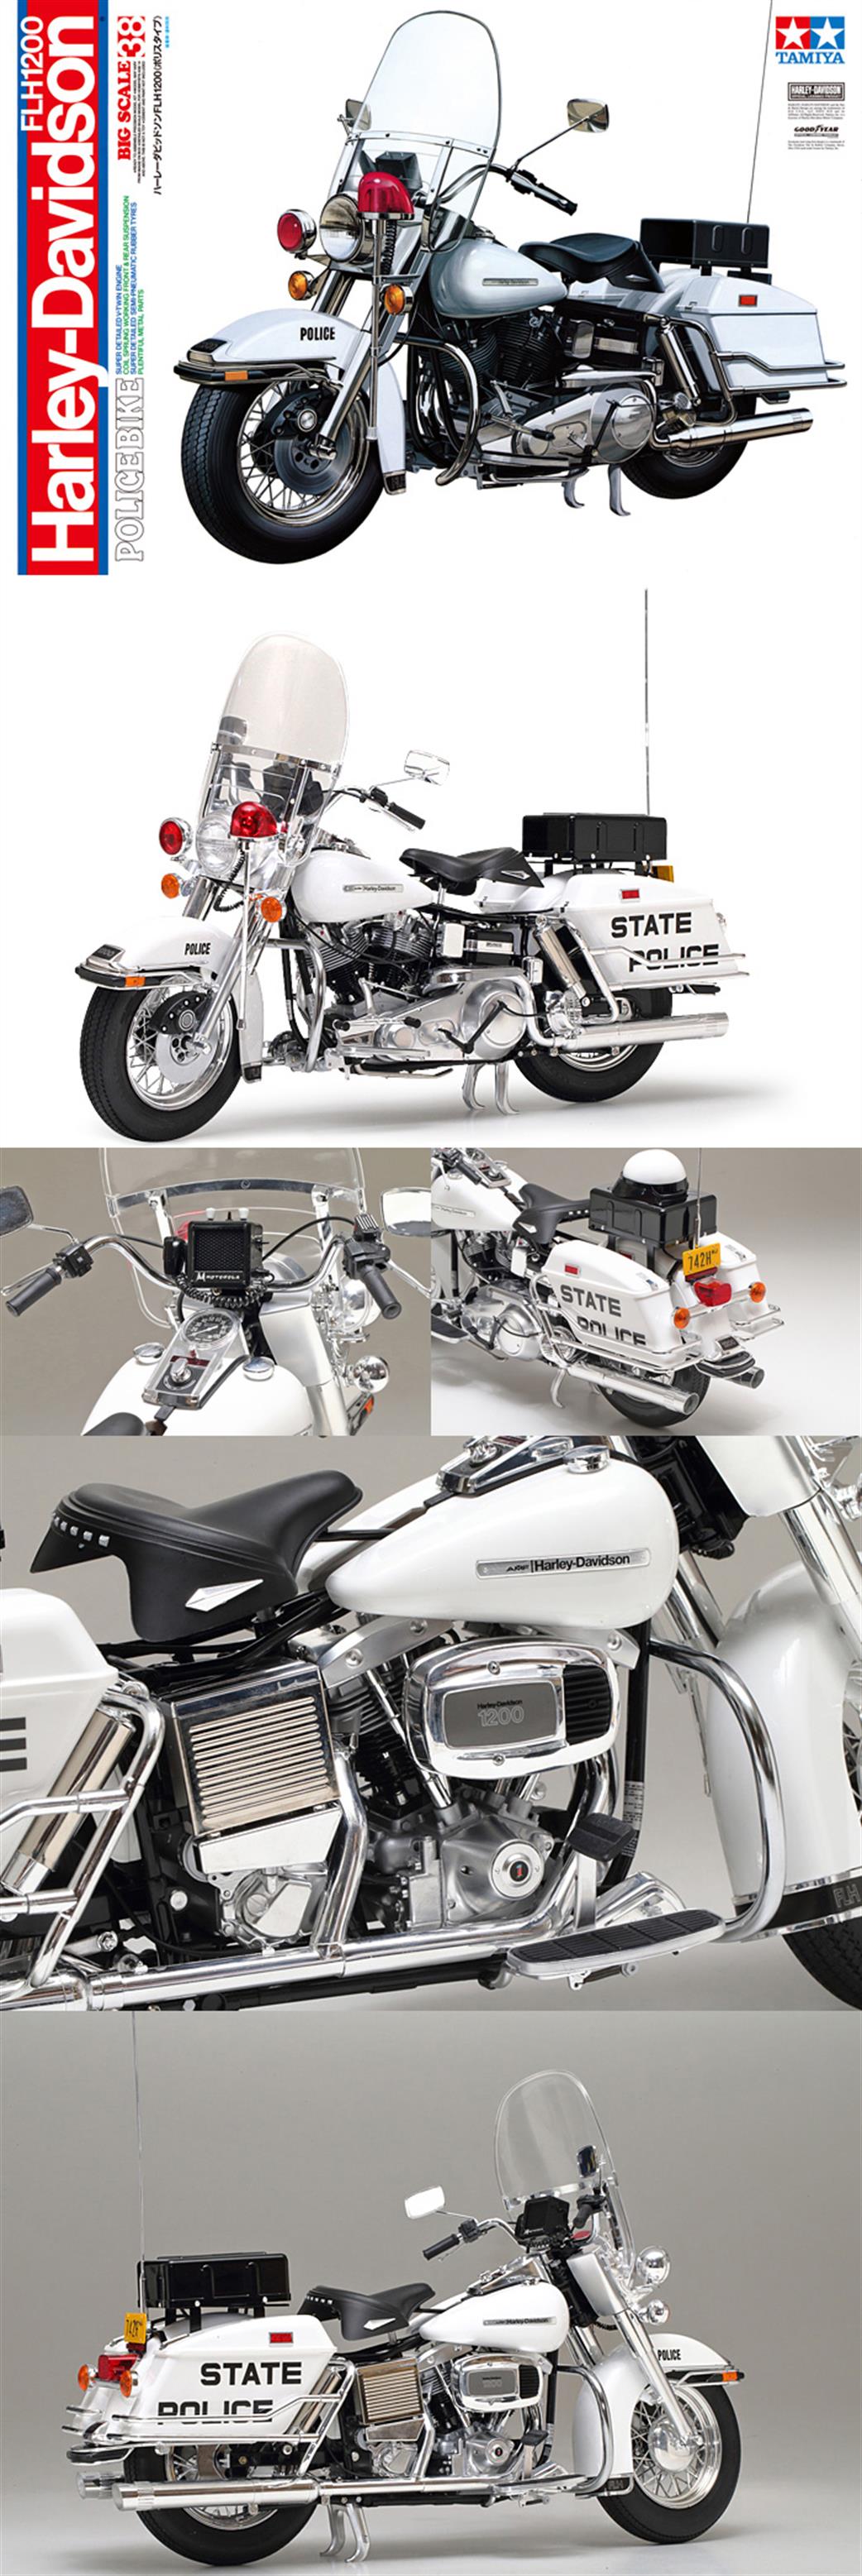 Tamiya 1/6 16038 Harley Davidson FLH1200 Police Bike Kit